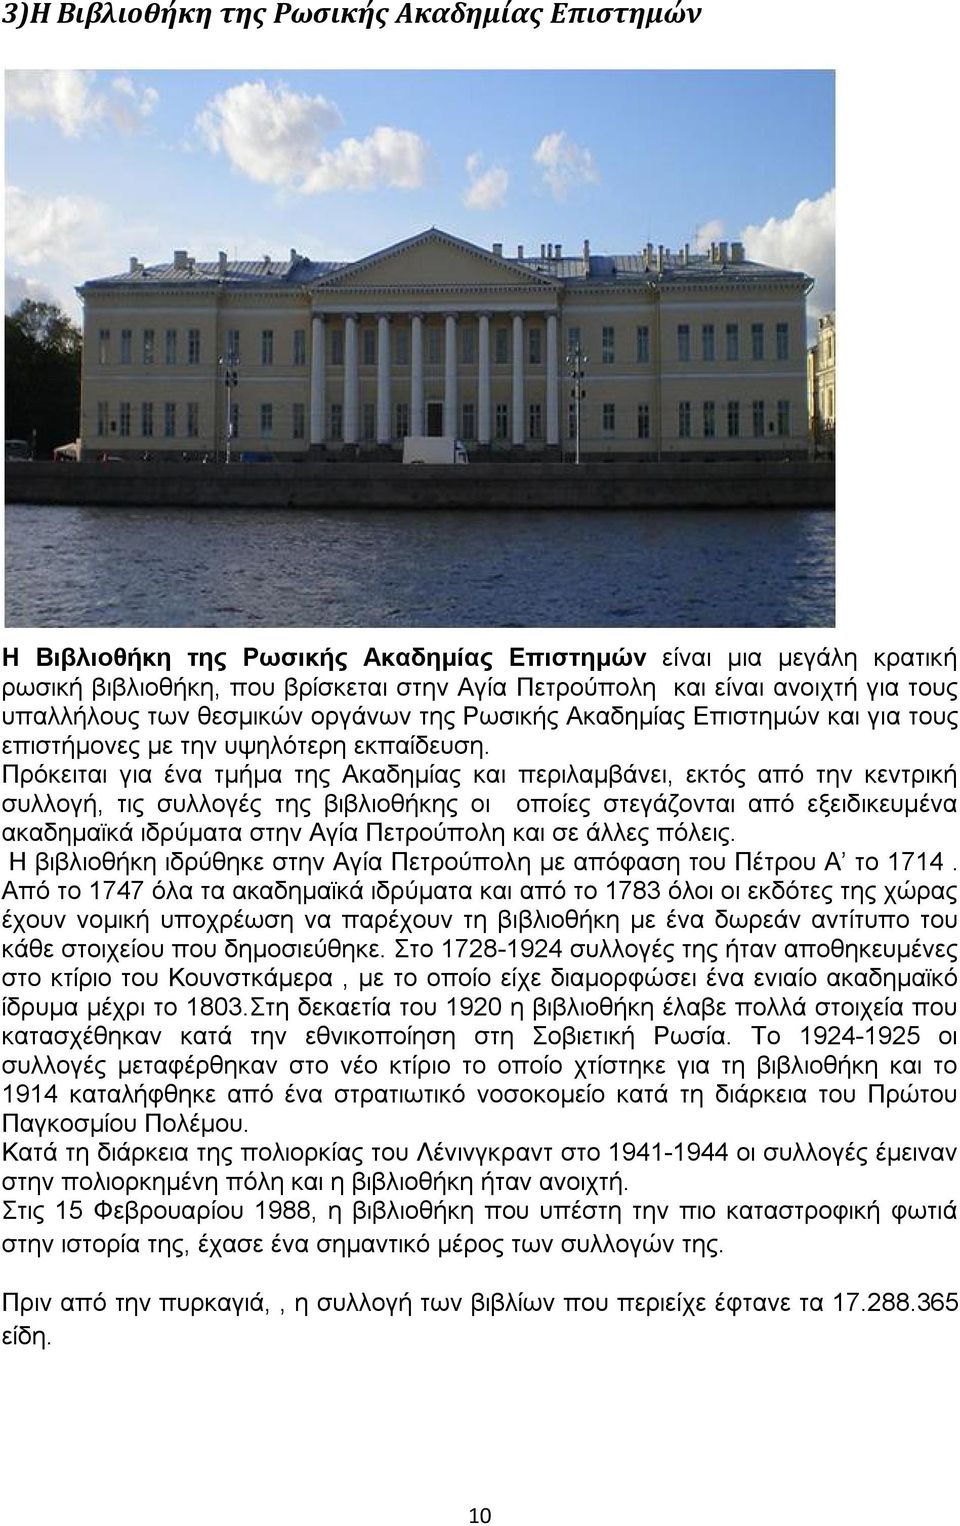 Πρόκειται για ένα τμήμα της Ακαδημίας και περιλαμβάνει, εκτός από την κεντρική συλλογή, τις συλλογές της βιβλιοθήκης οι οποίες στεγάζονται από εξειδικευμένα ακαδημαϊκά ιδρύματα στην Αγία Πετρούπολη